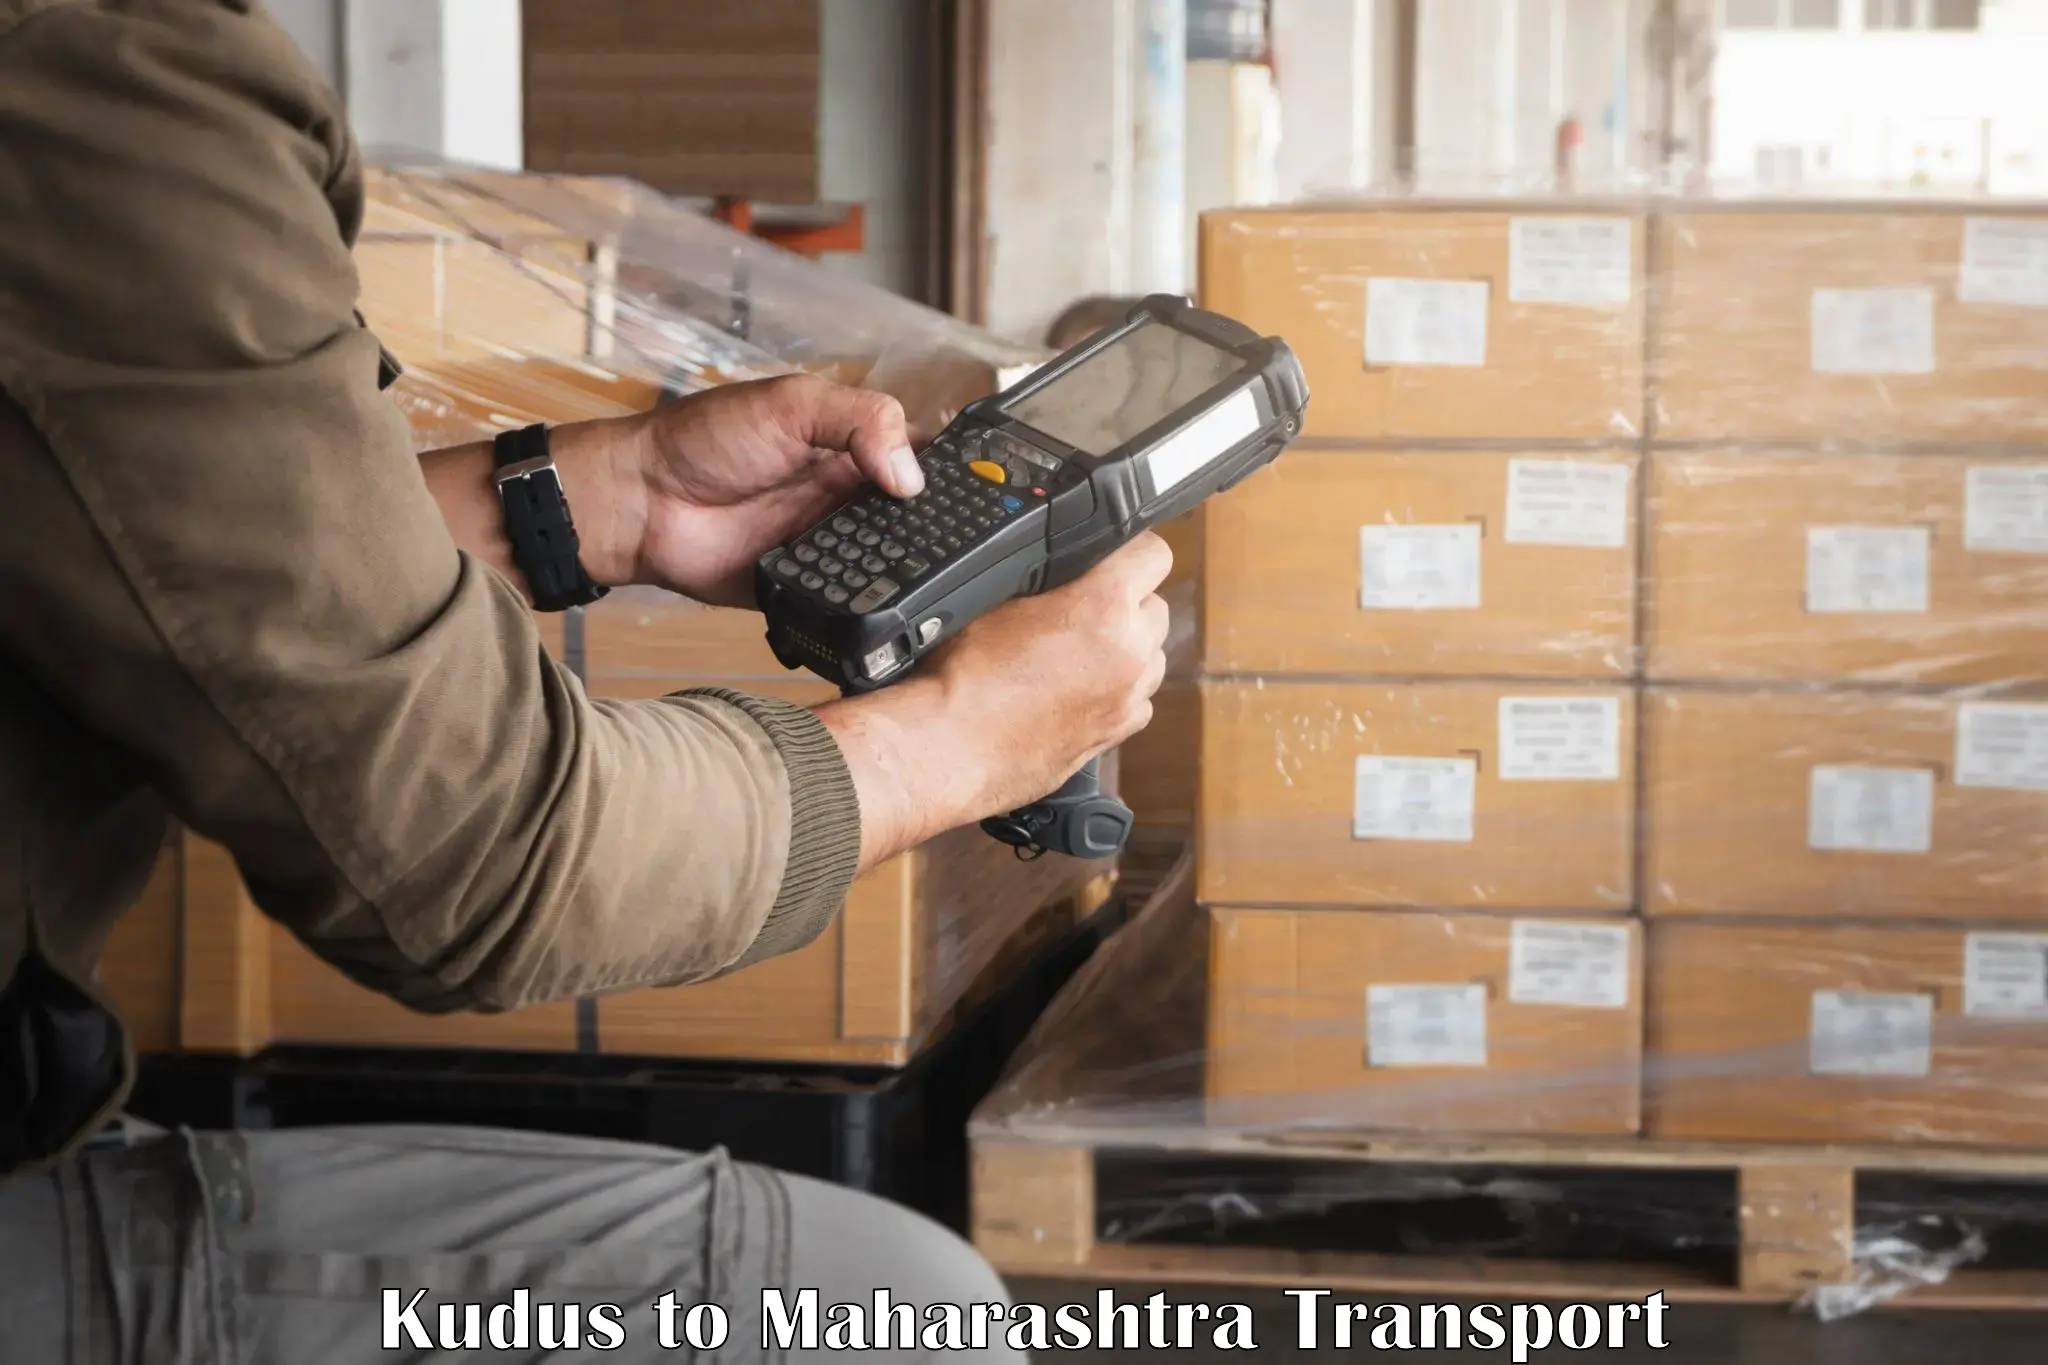 Truck transport companies in India Kudus to Raigarh Maharashtra